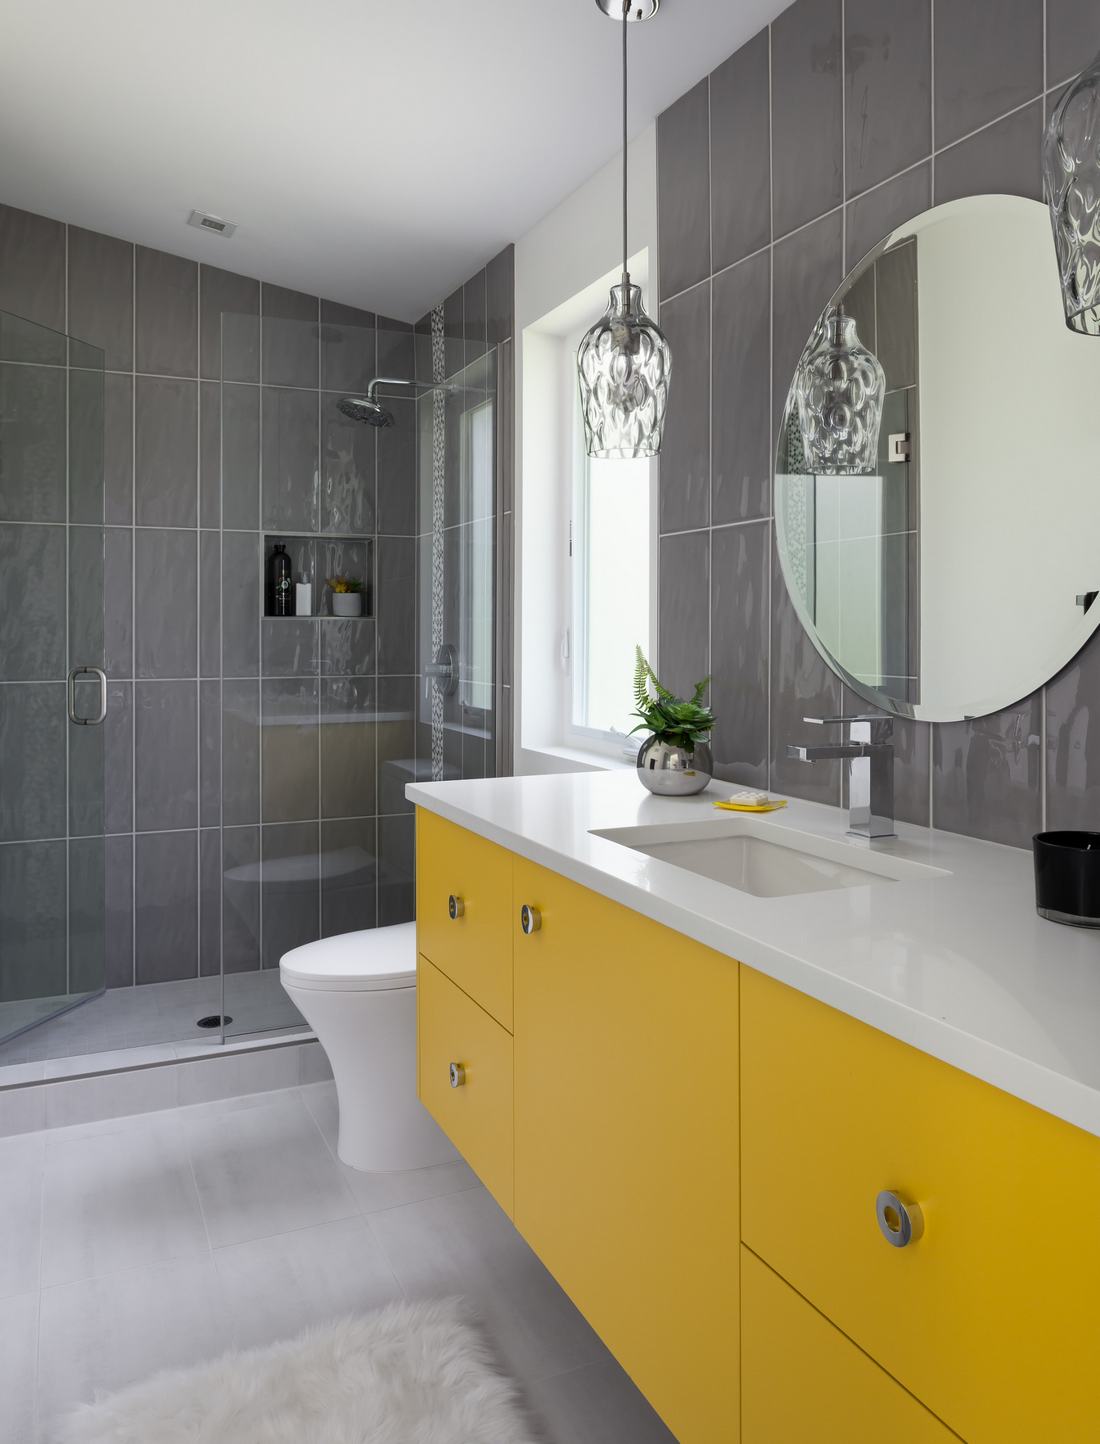 sárga - 14 látványos szín ötlet új fürdőszoba elevenebb, vidámabb hangulatú dekorációjához